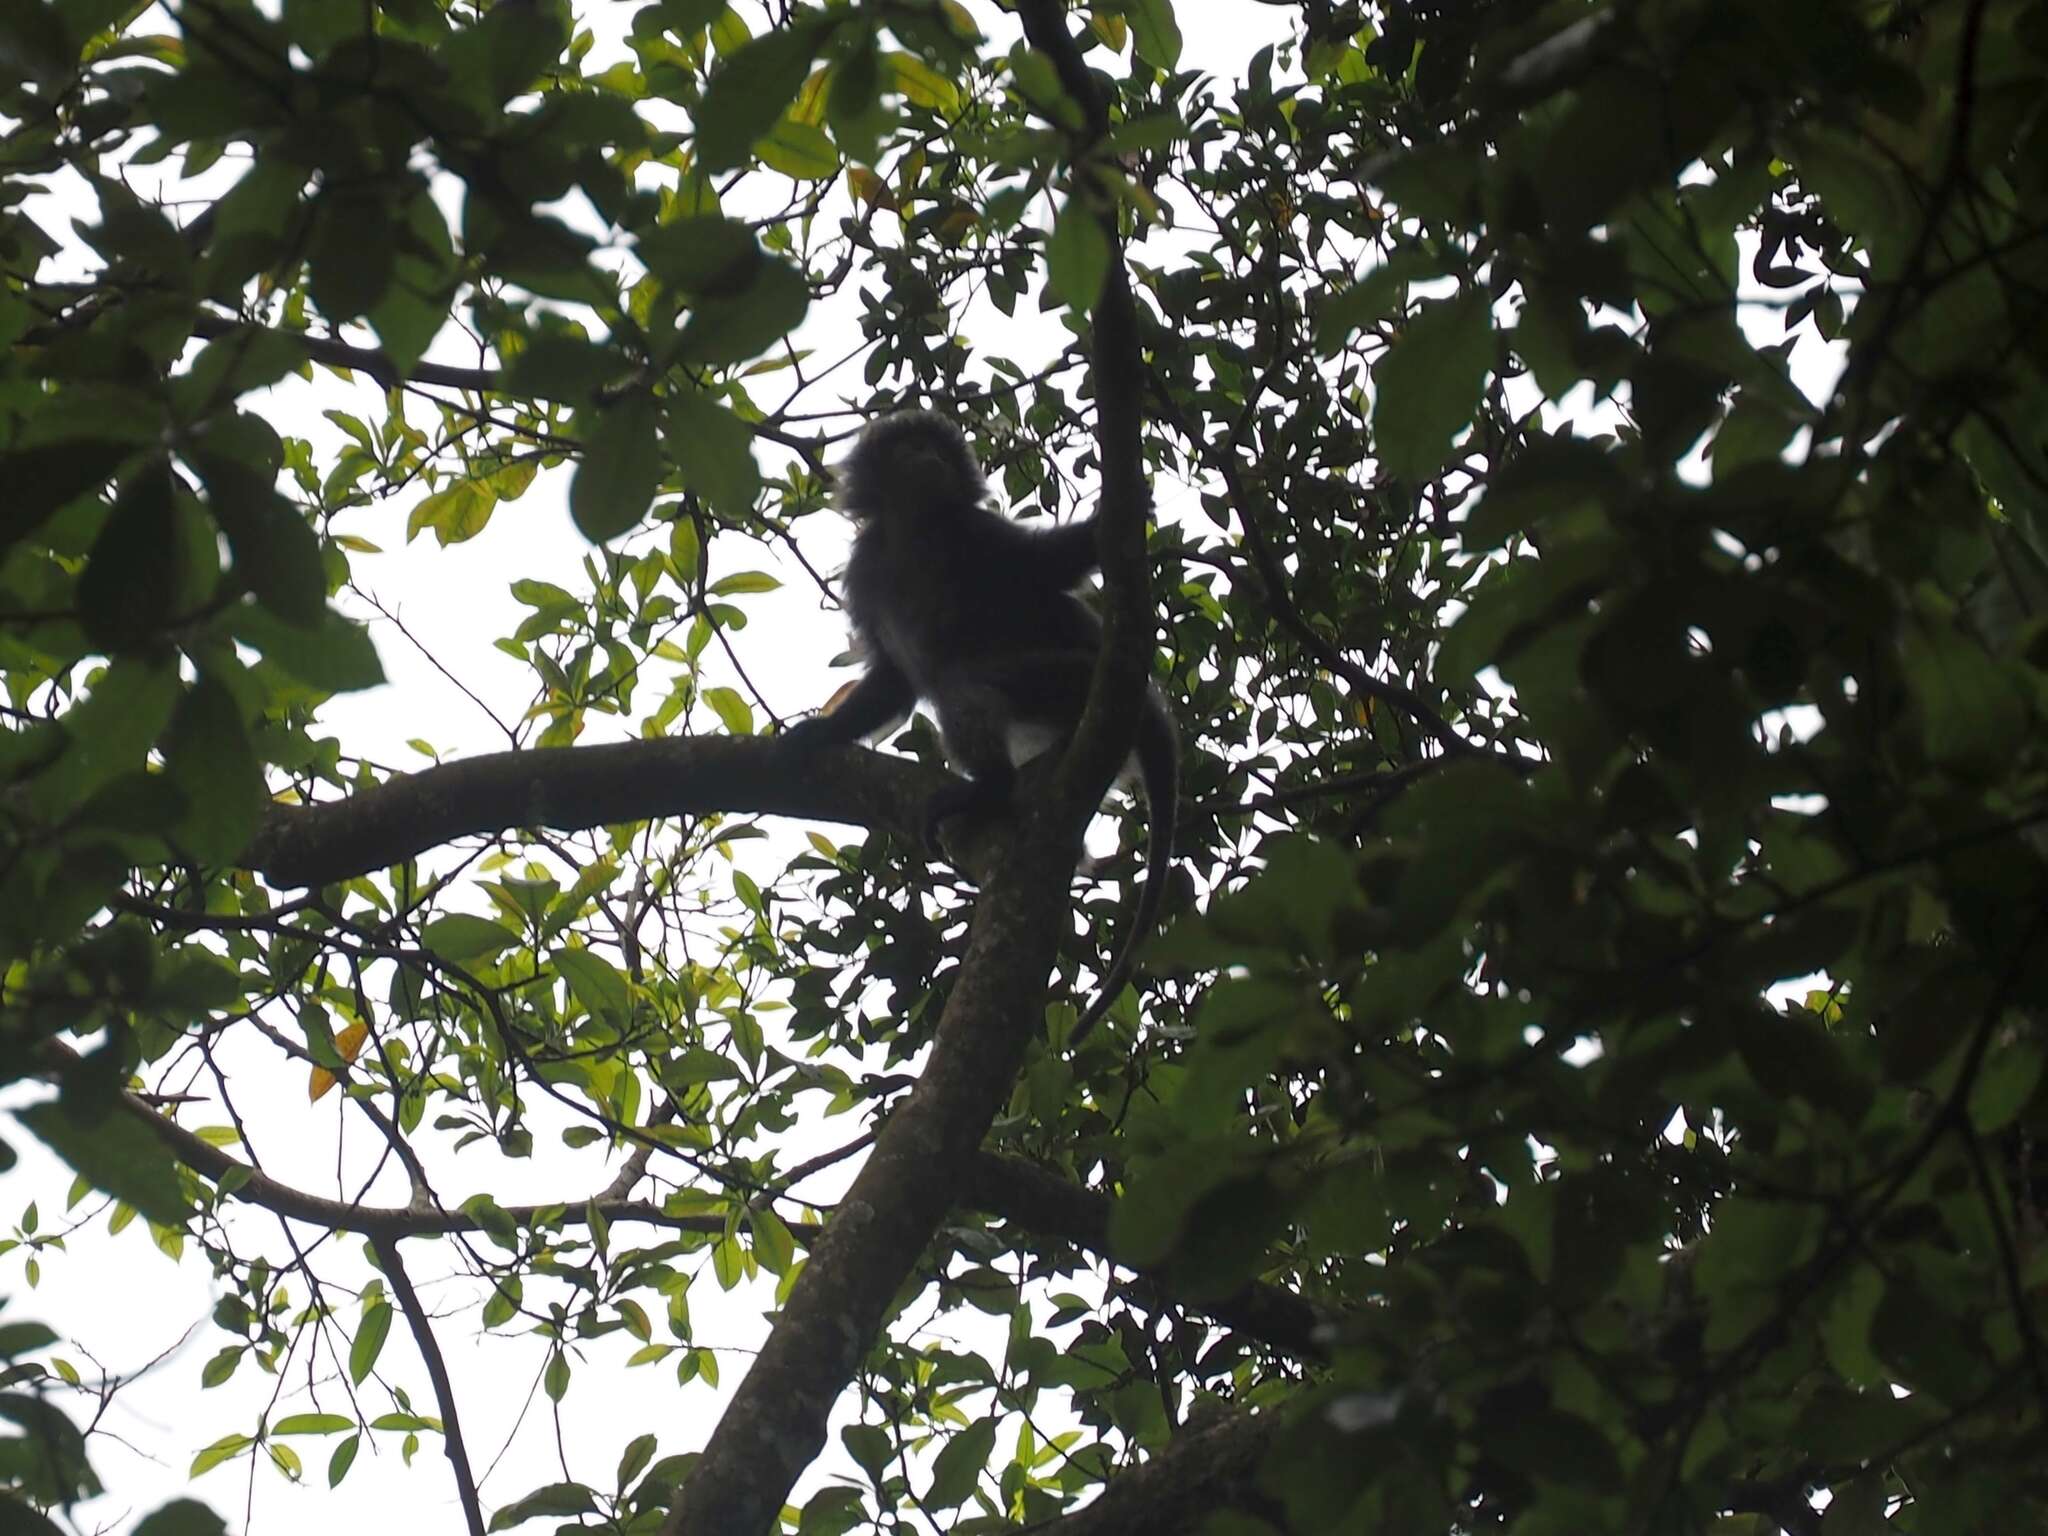 Image of Eastern Ebony Leaf Monkey